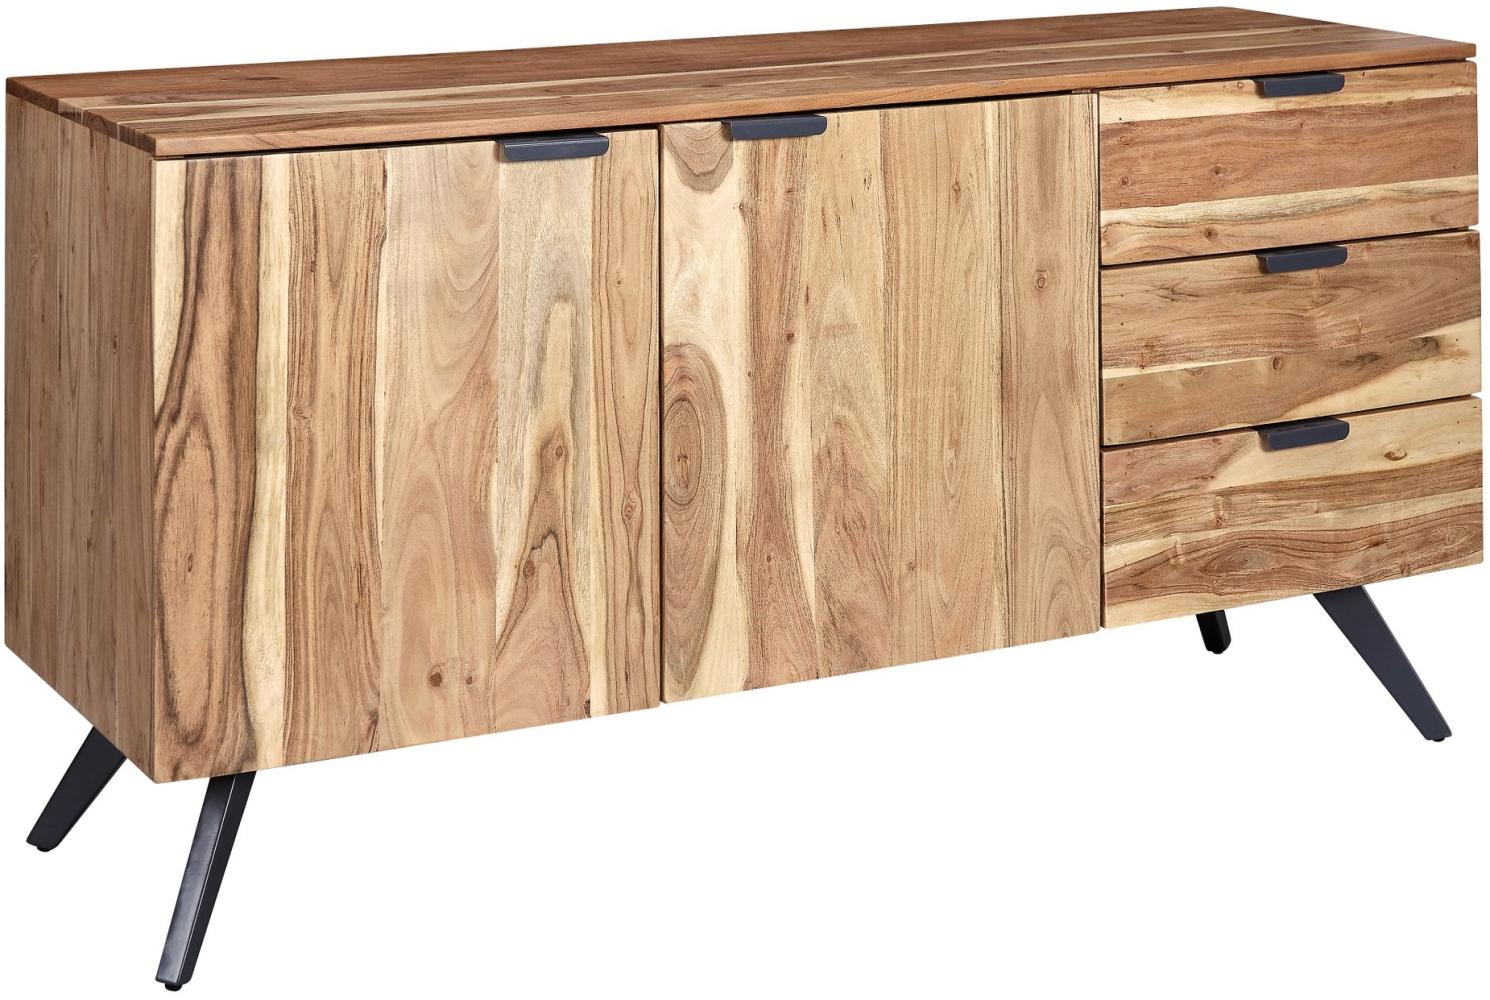 KADIMA DESIGN Akazienholz Sideboard, 145x75x45 cm - Zeitloses Design mit praktischen Stauraumoptionen. Bild 1